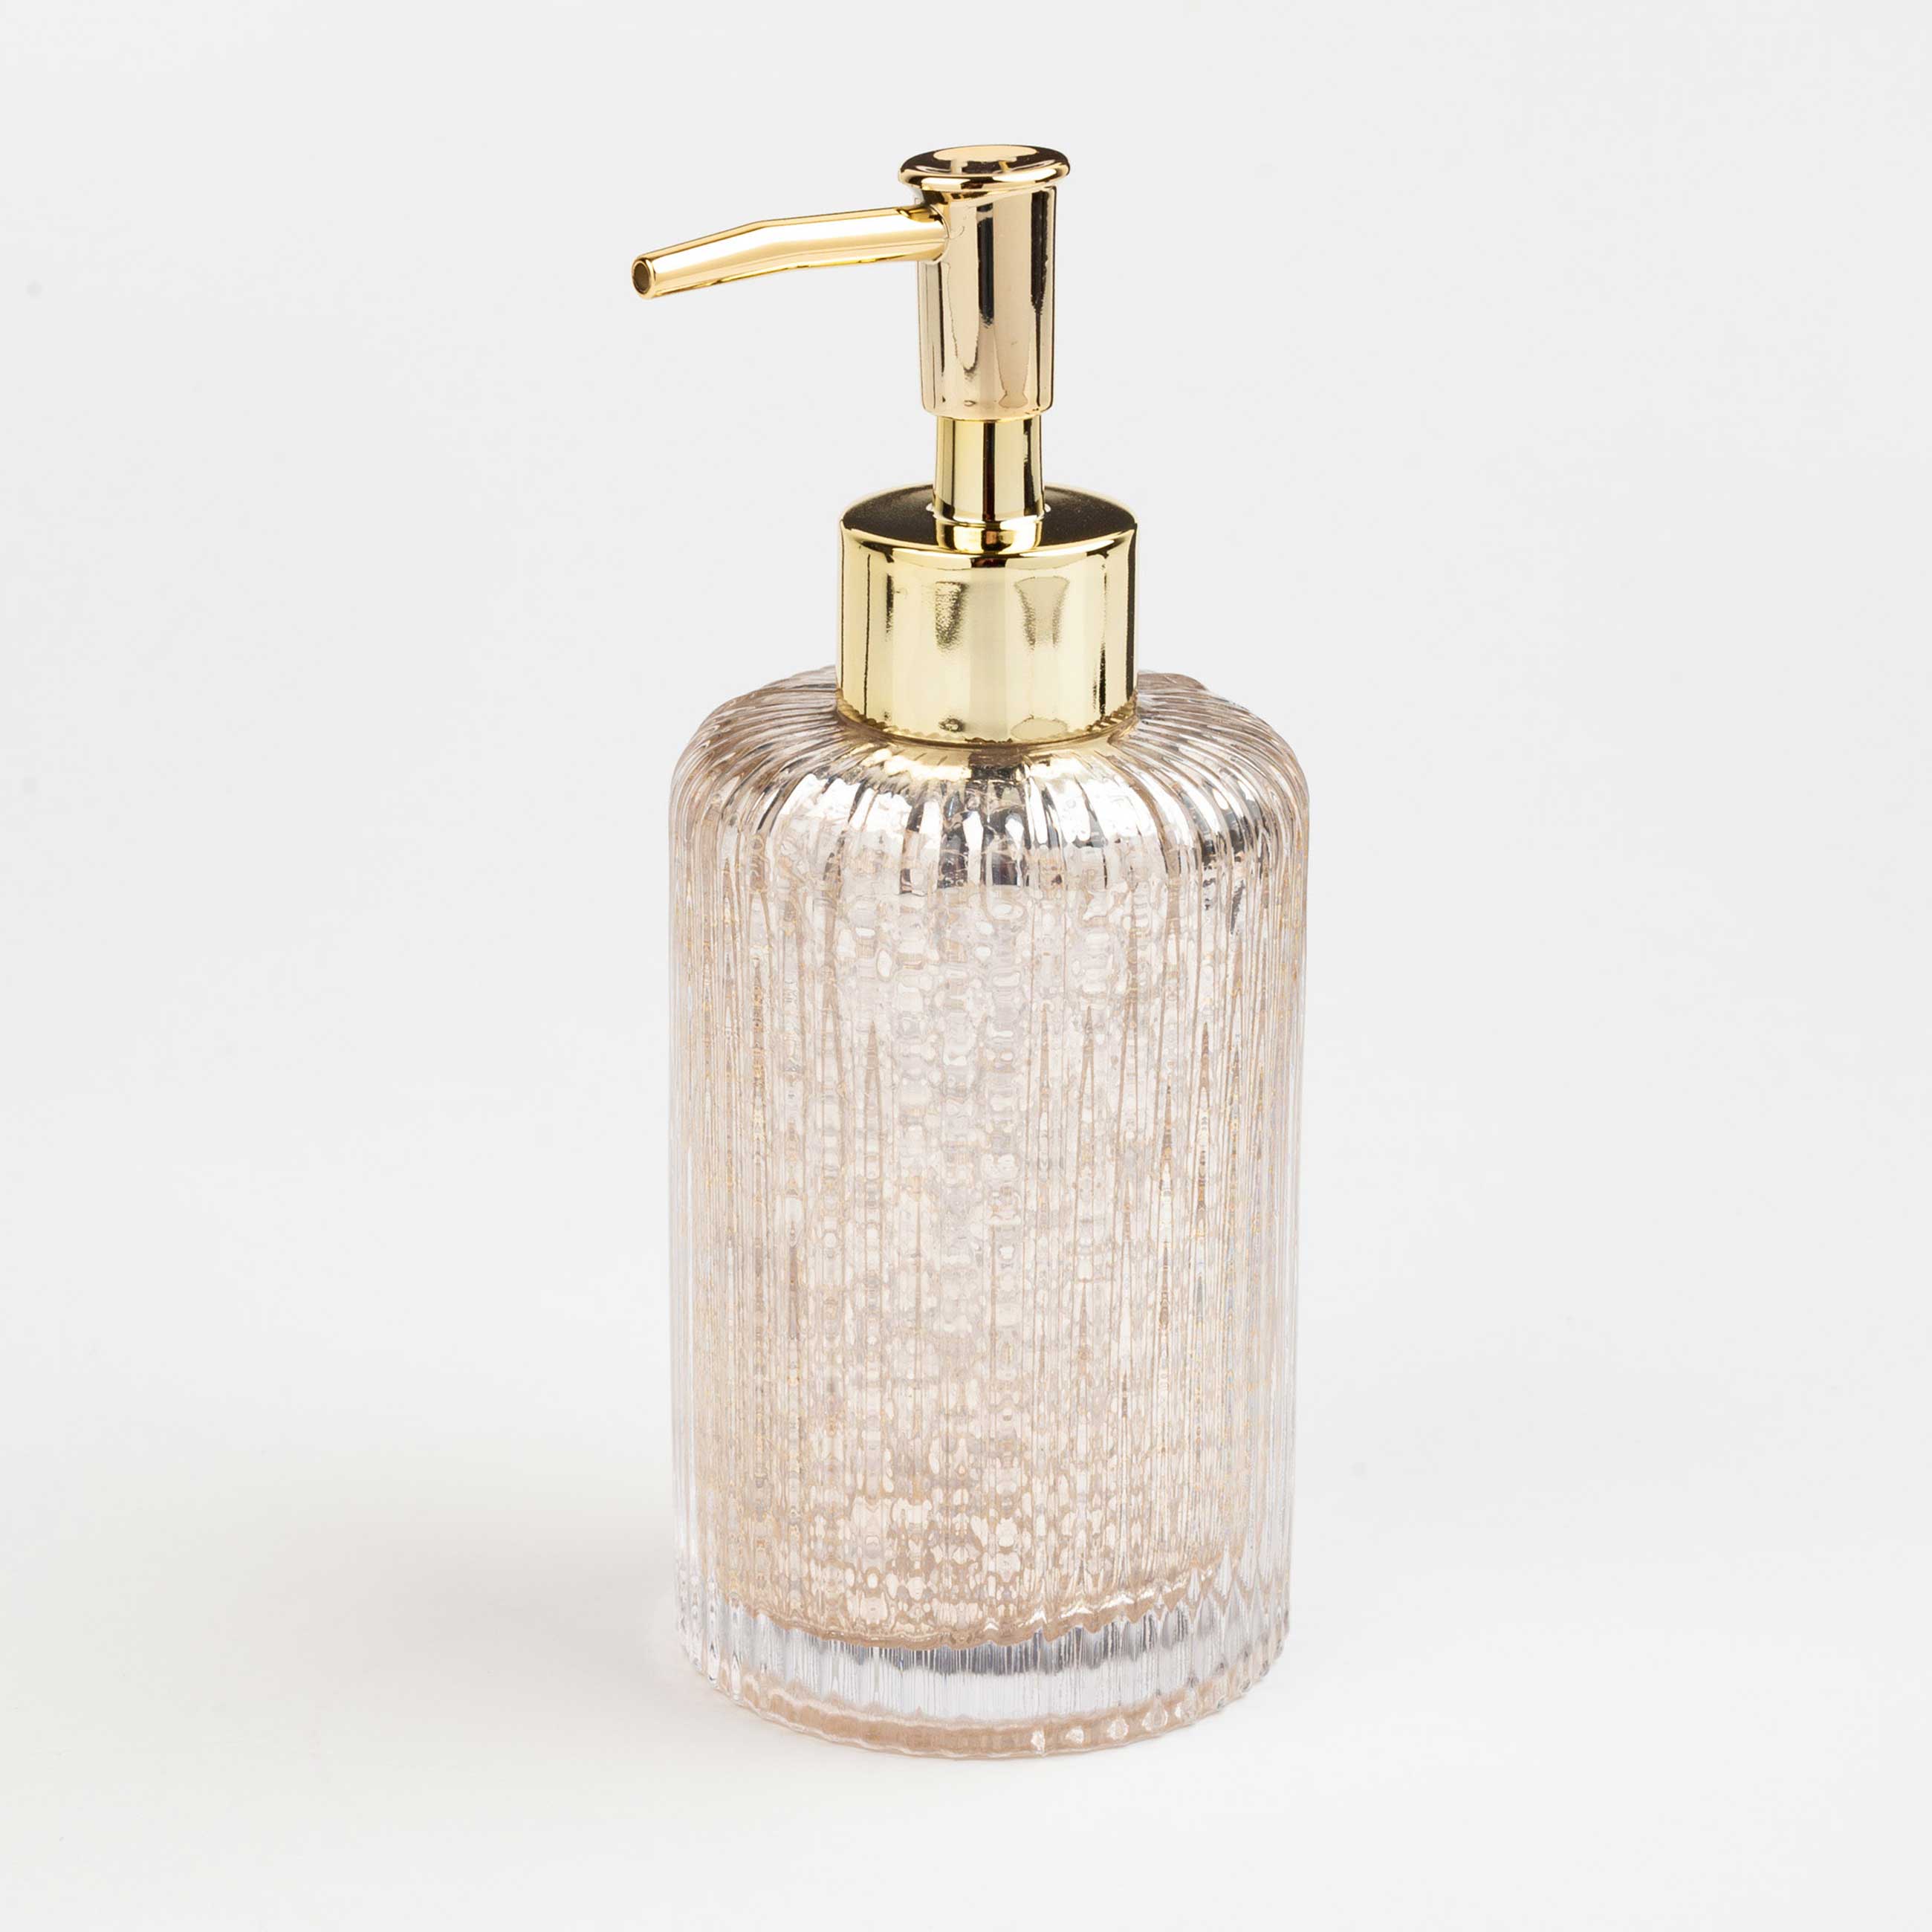 Liquid soap dispenser, 240 ml, glass / plastic, golden, Diana изображение № 4